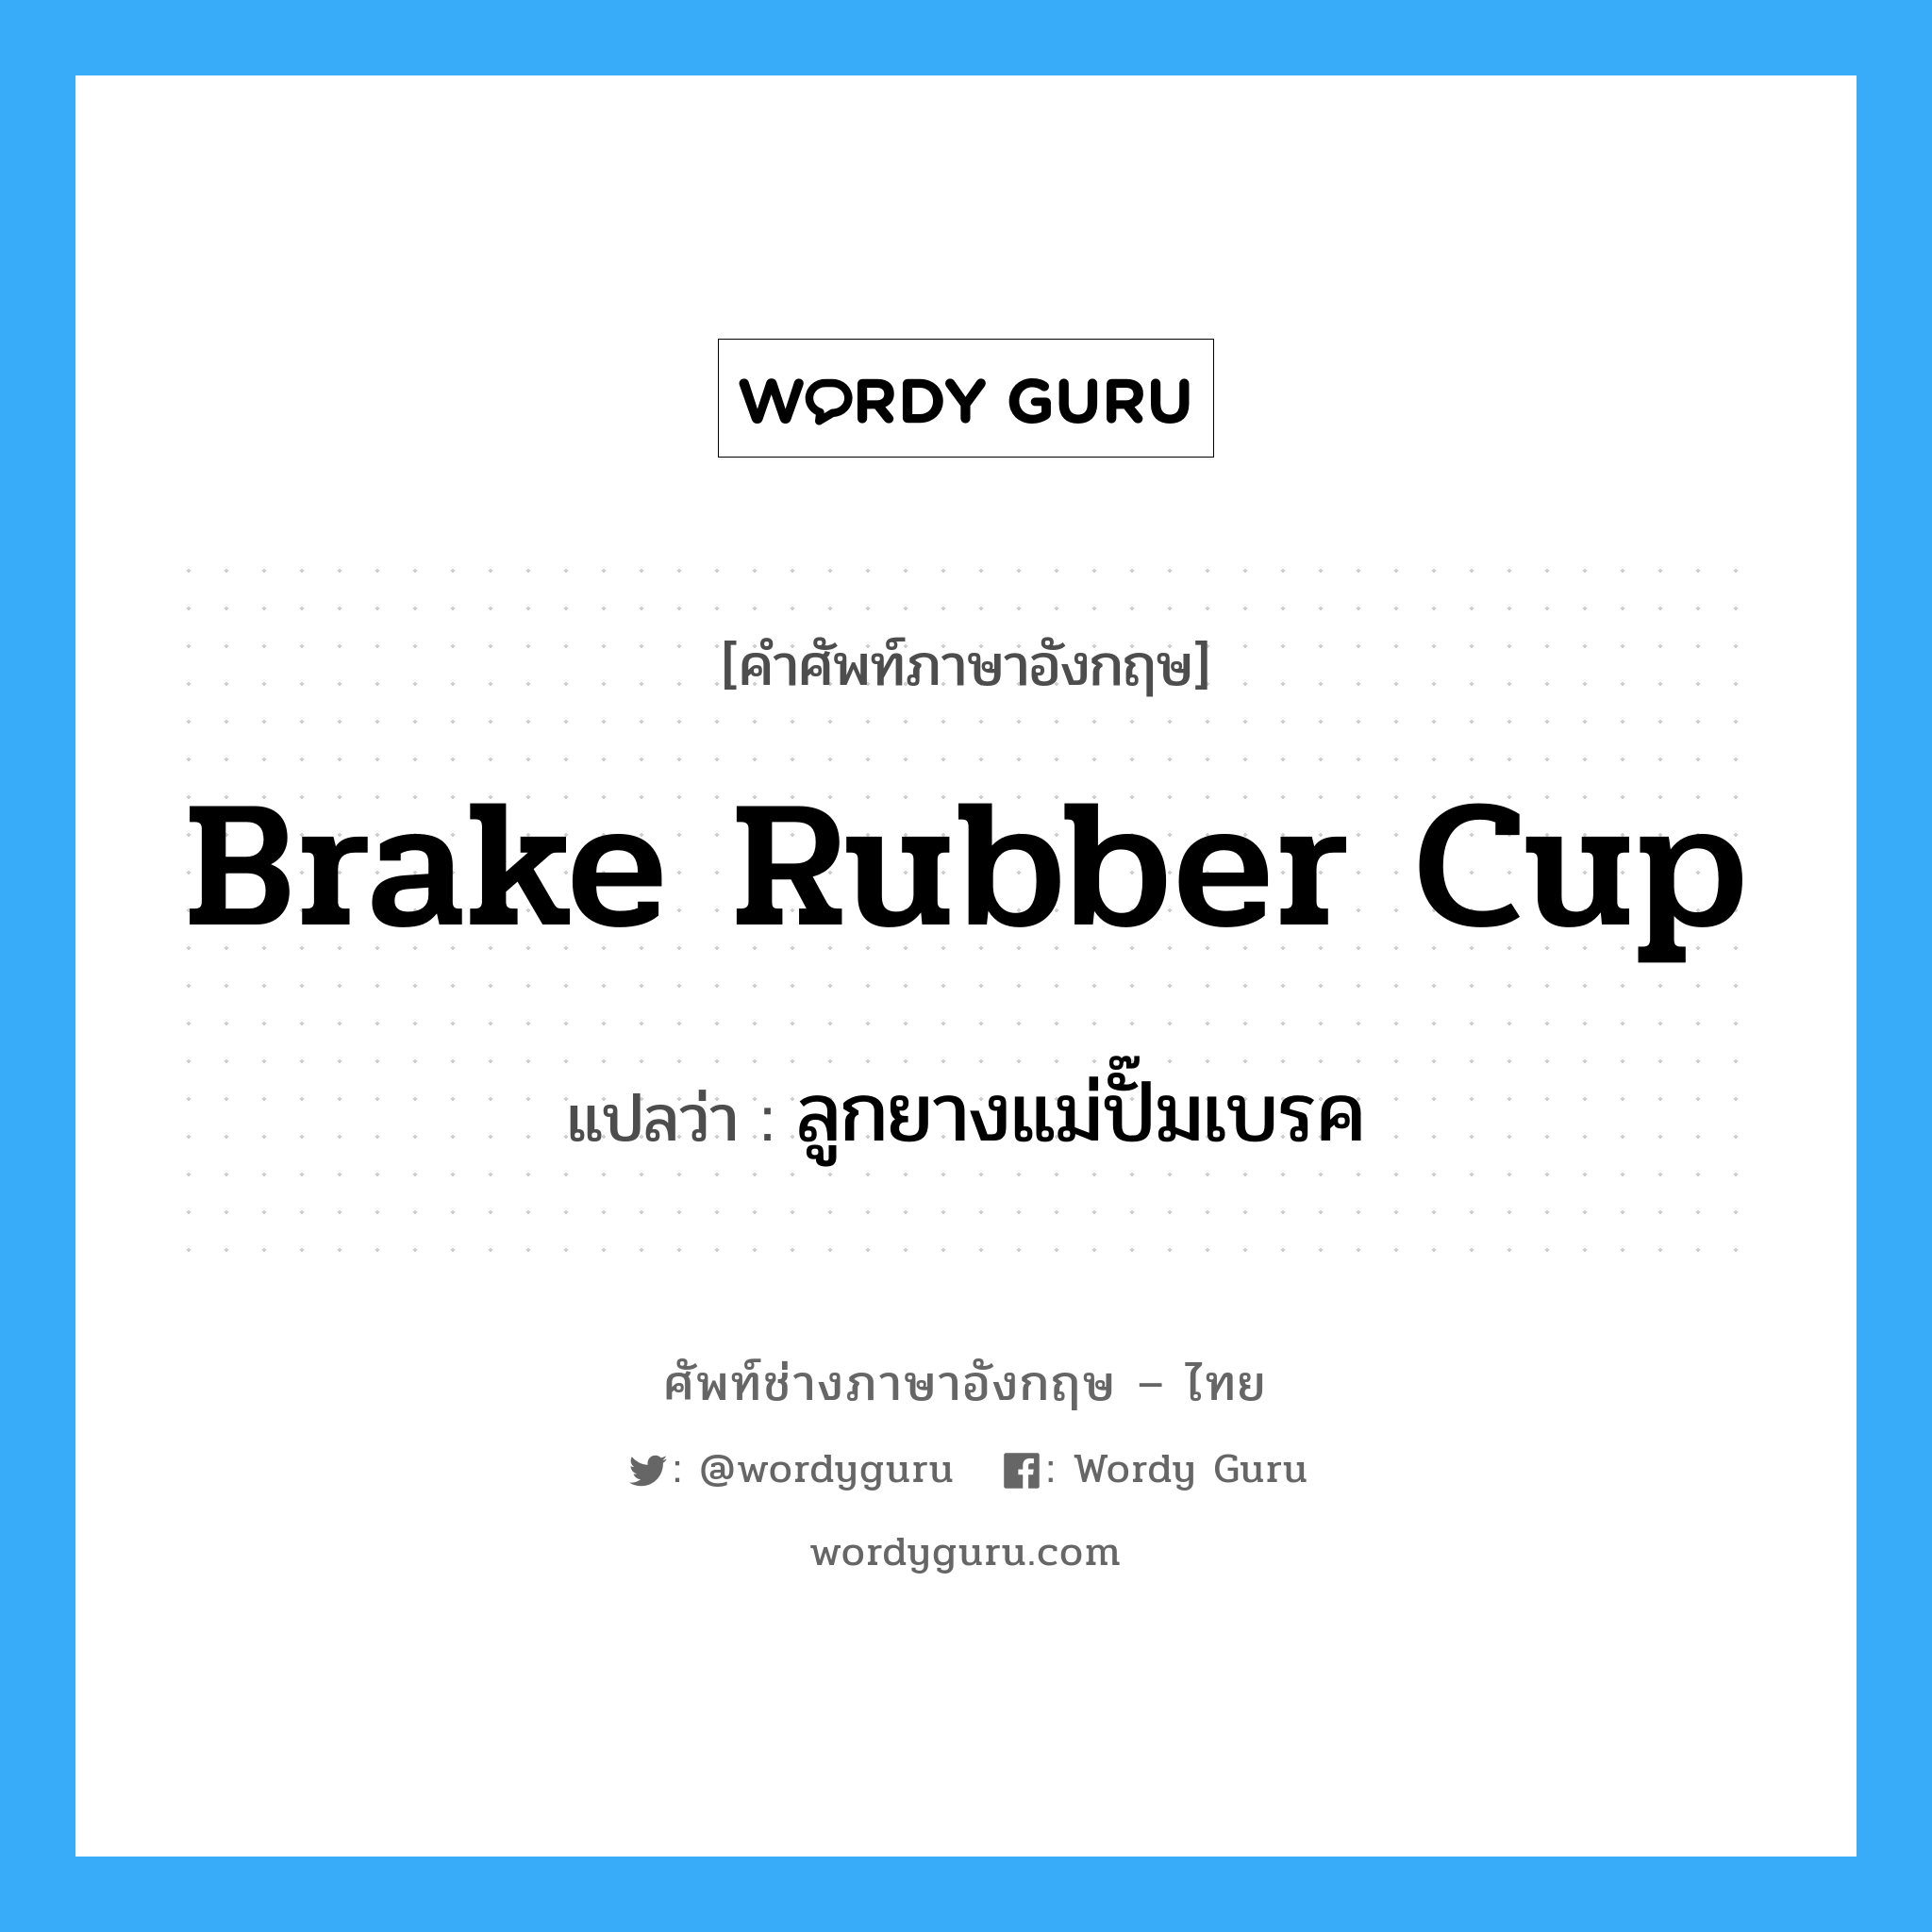 brake rubber cup แปลว่า?, คำศัพท์ช่างภาษาอังกฤษ - ไทย brake rubber cup คำศัพท์ภาษาอังกฤษ brake rubber cup แปลว่า ลูกยางแม่ปั๊มเบรค